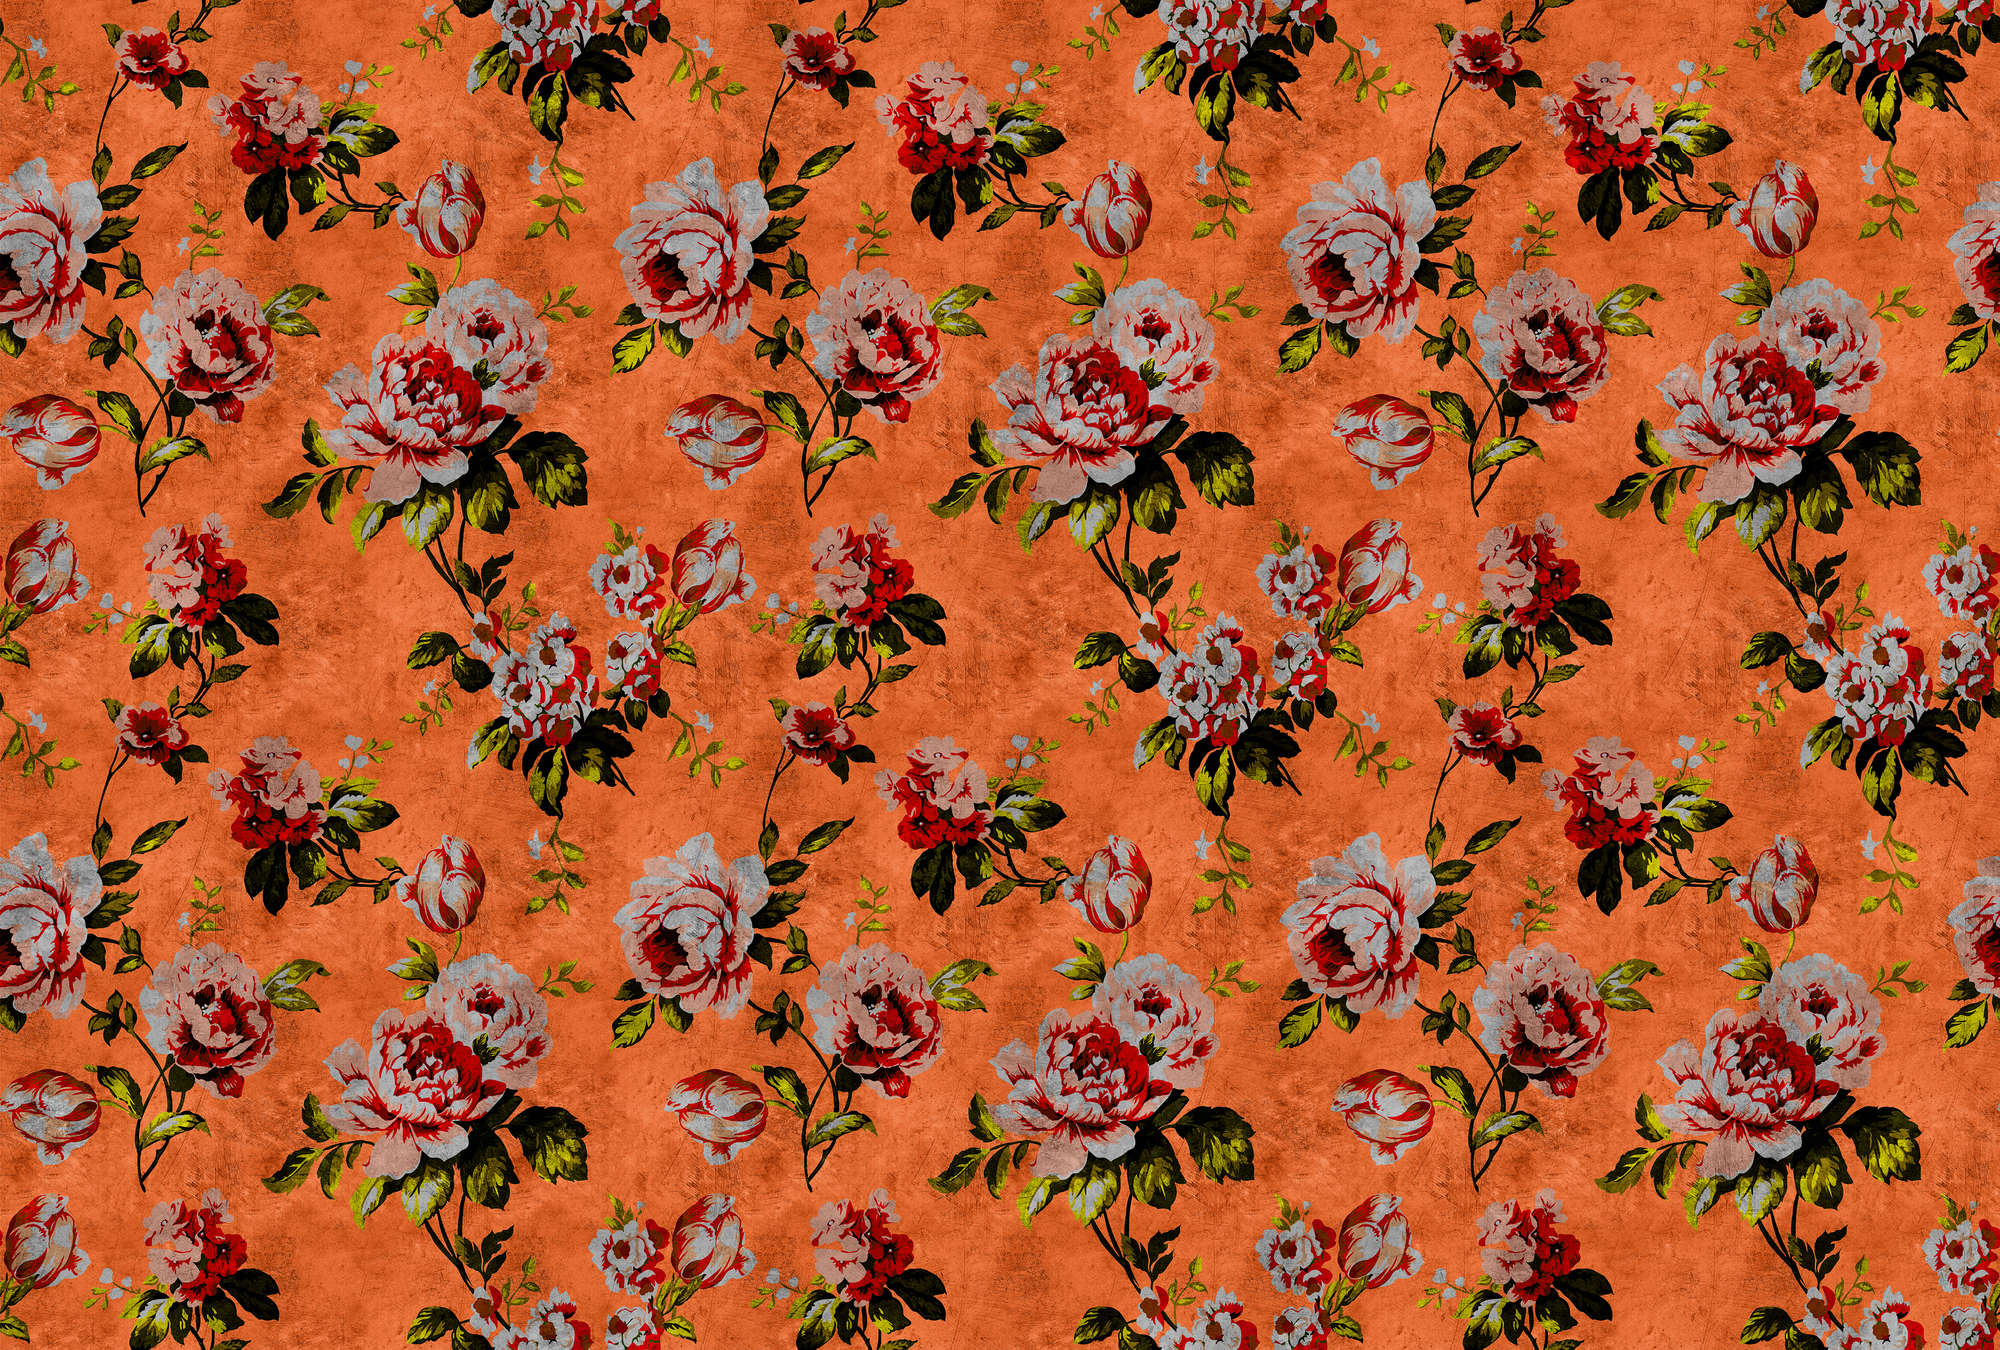             Wild roses 2 - Rosen Fototapete in kratzer Struktur im Retrolook, Orange – Gelb, Orange | Perlmutt Glattvlies
        